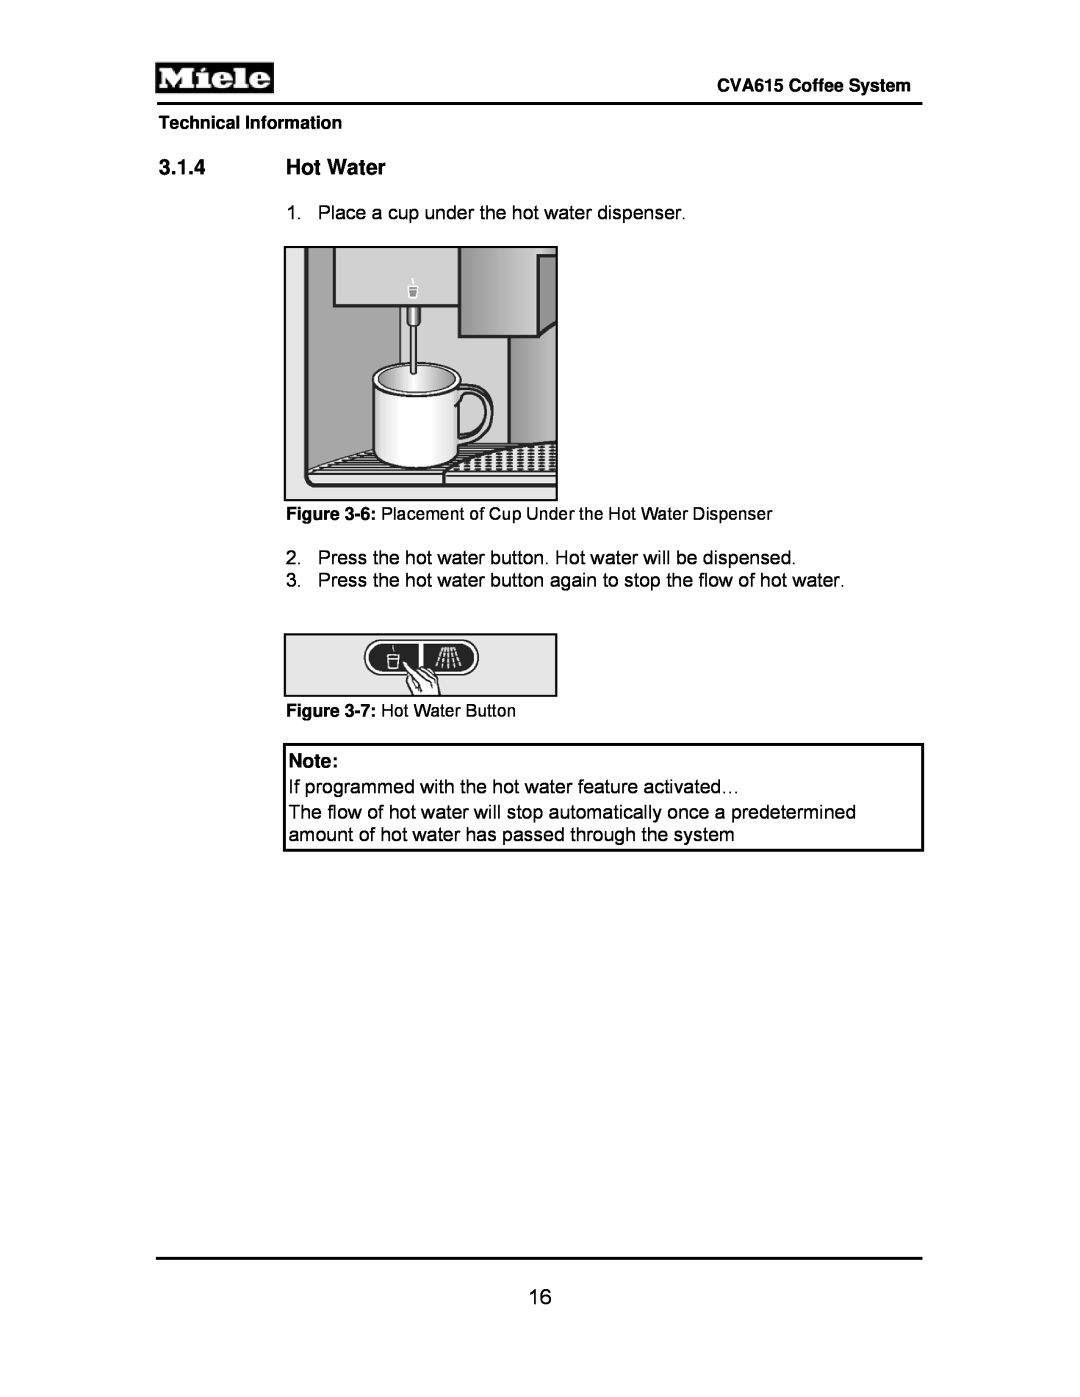 Miele CVA615 manual 3.1.4Hot Water 